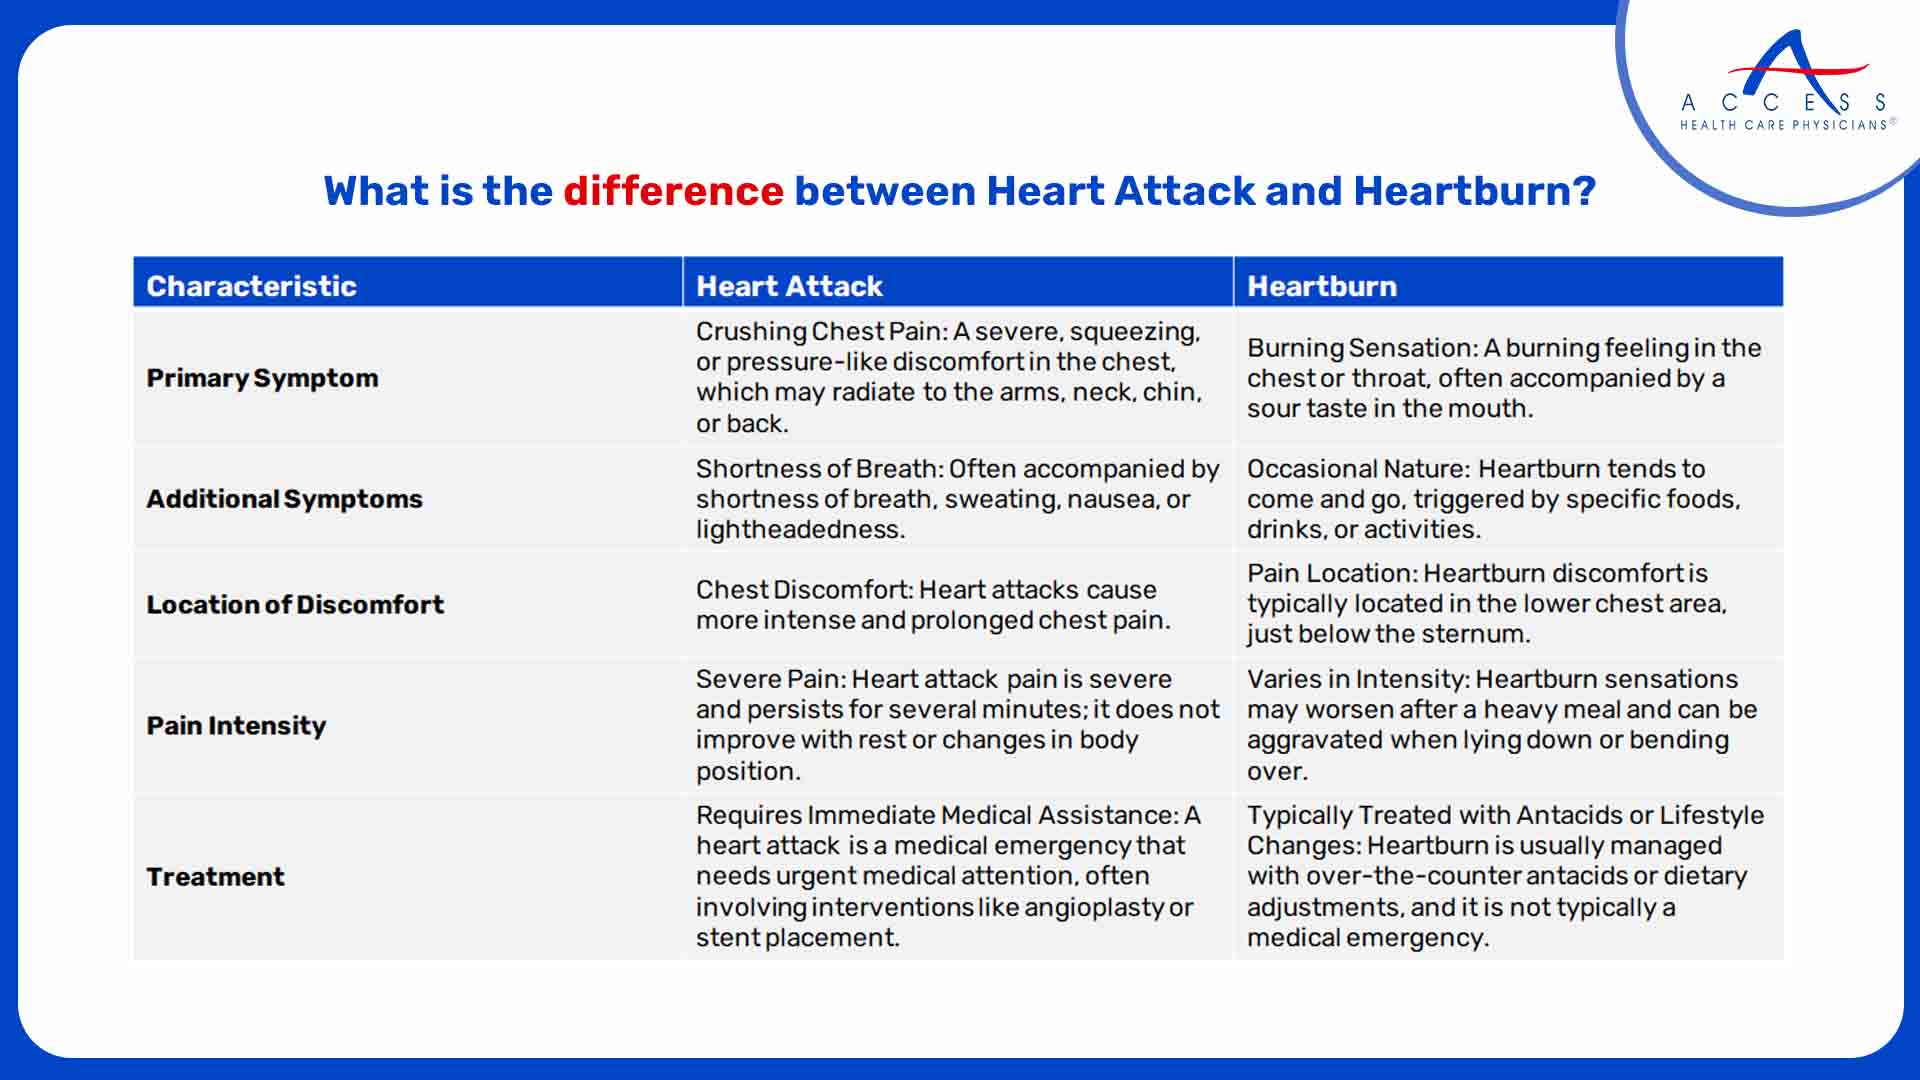 Heart Attack vs. Heartburn